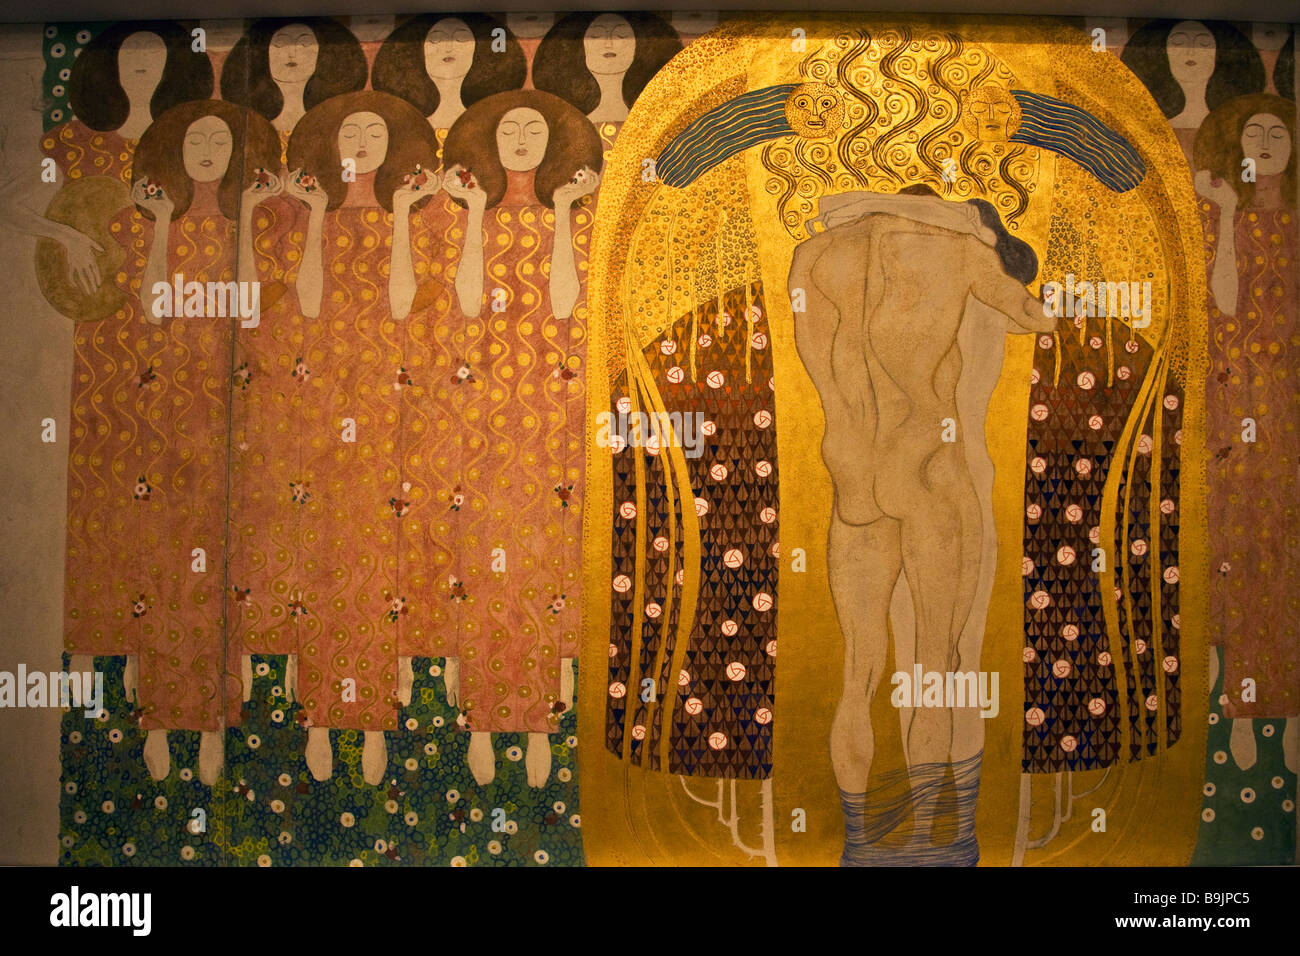 Voici un baiser au monde entier à partir de la Frise Beethoven de Gustav Klimt 1902 Banque D'Images